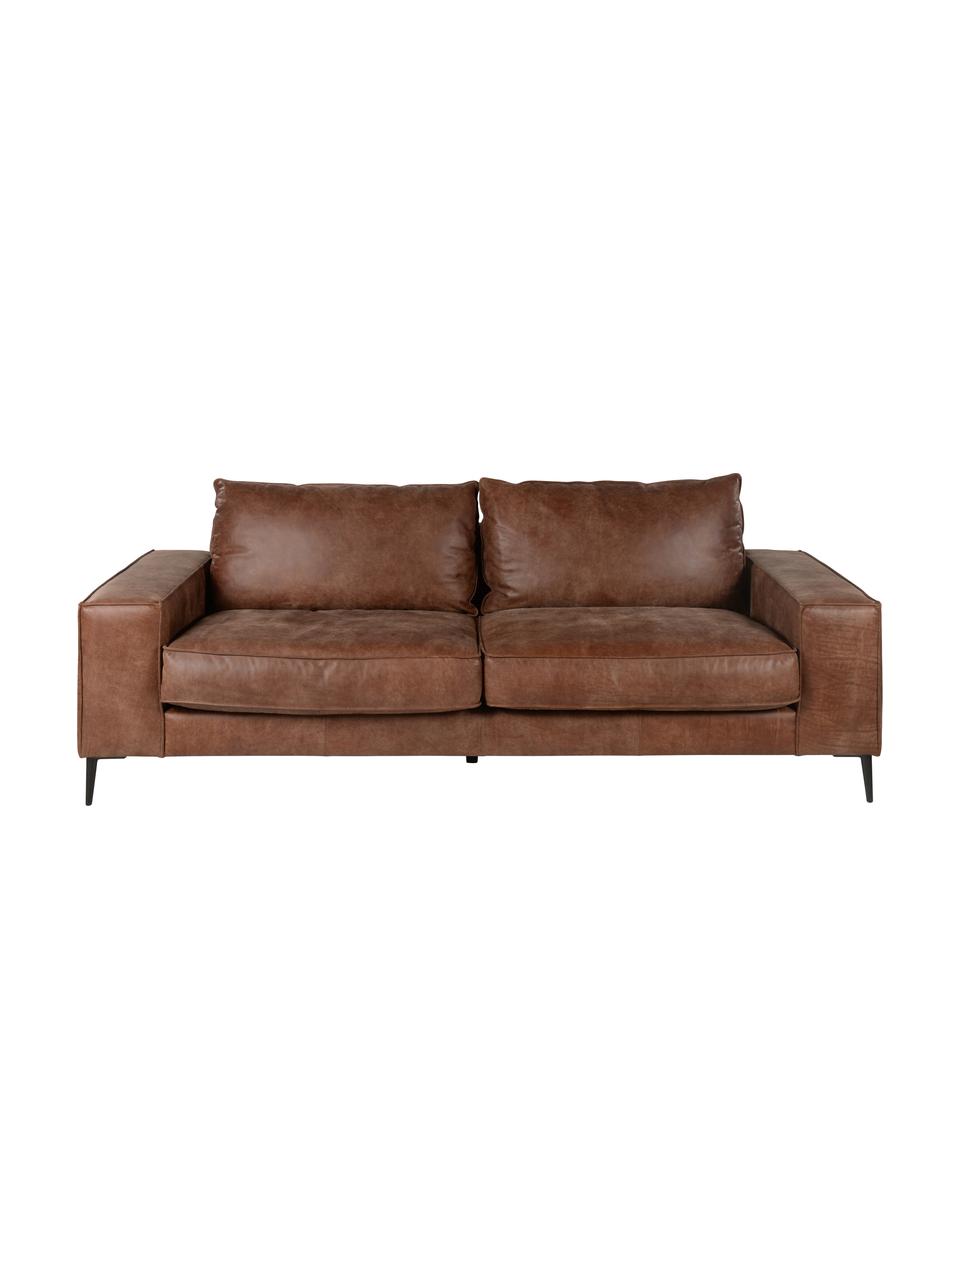 Sofa skórzana Brett (3-osobowa), Tapicerka: skóra bydlęca, gładka, Odcienie brązowego, S 215 x G 90 cm